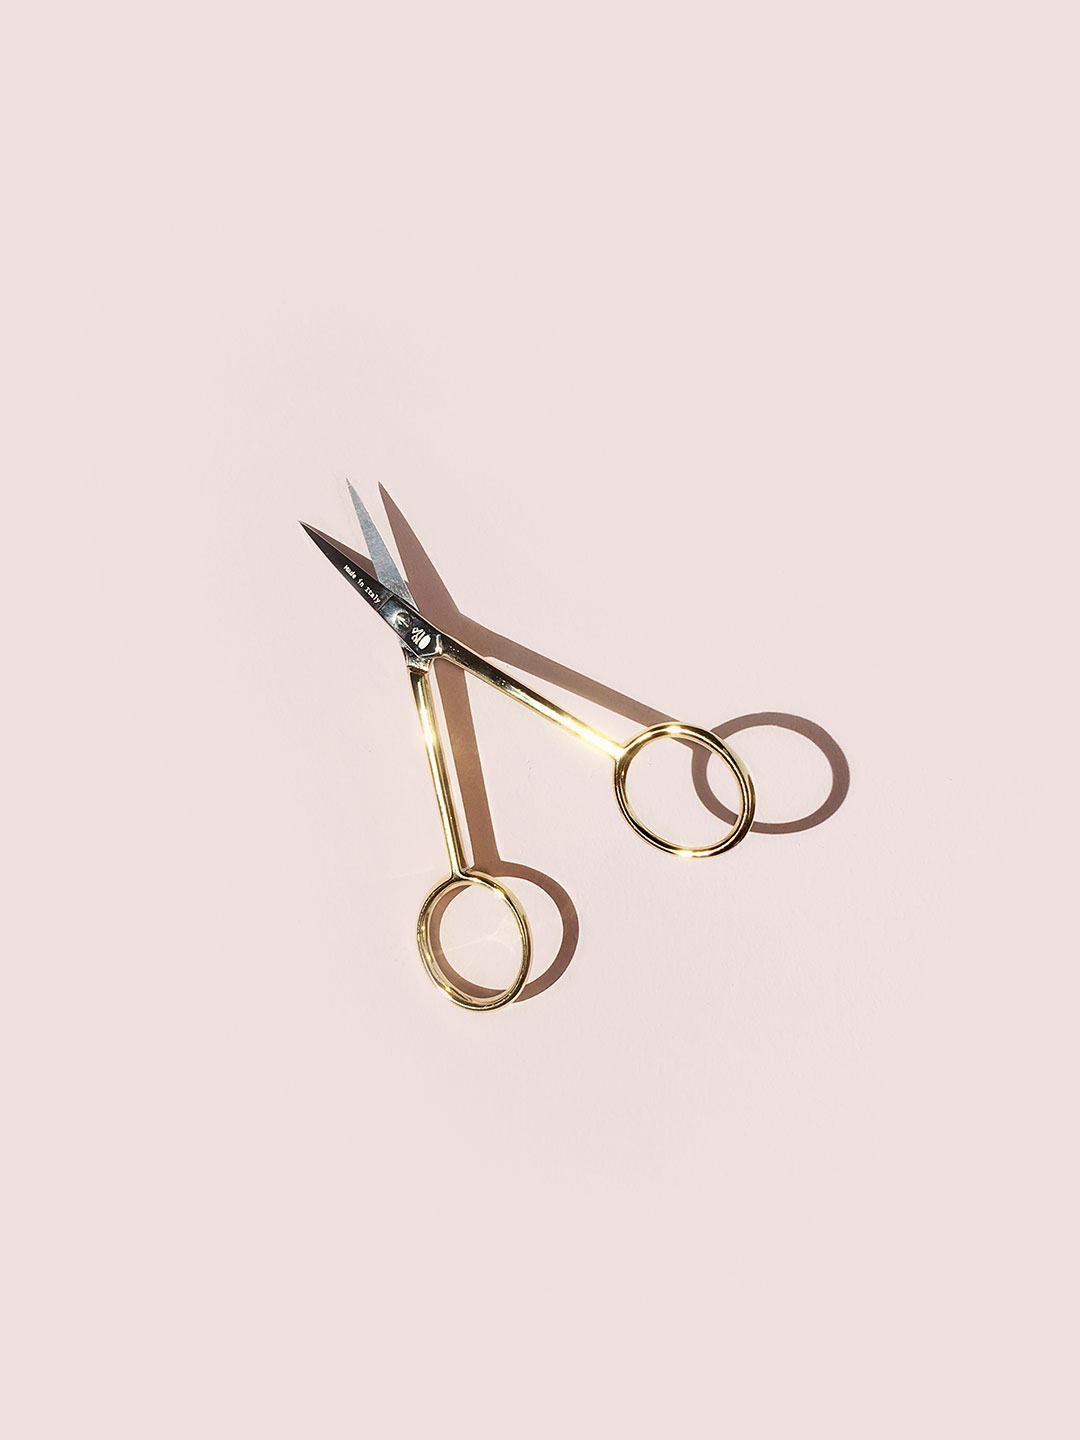 https://pommaker.com/wp-content/uploads/2017/08/Pom-Maker-fine-trimming-scissors-small-gold.jpg